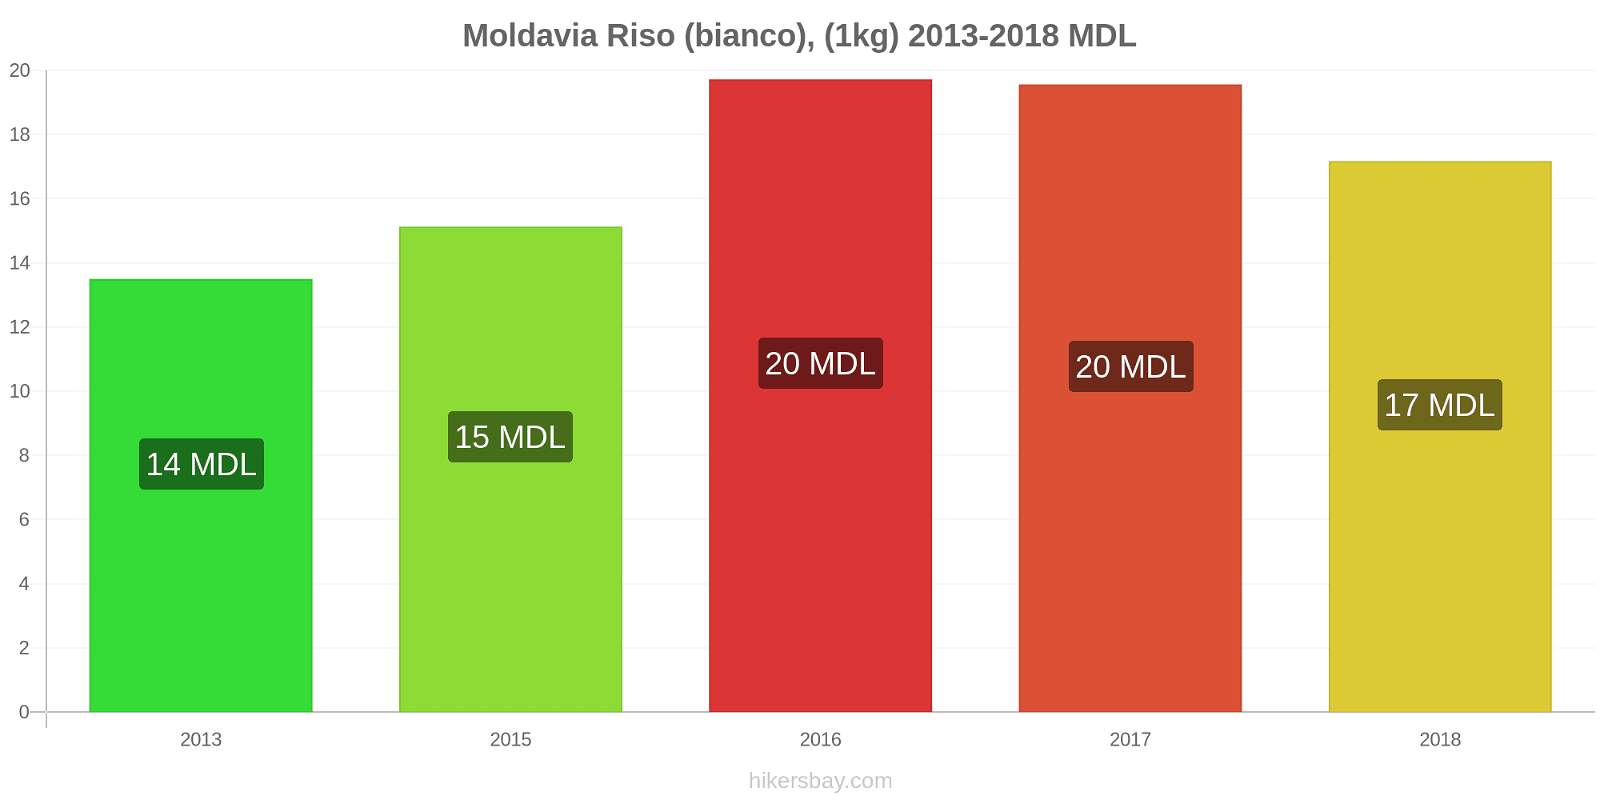 Moldavia cambi di prezzo Chilo di riso bianco hikersbay.com